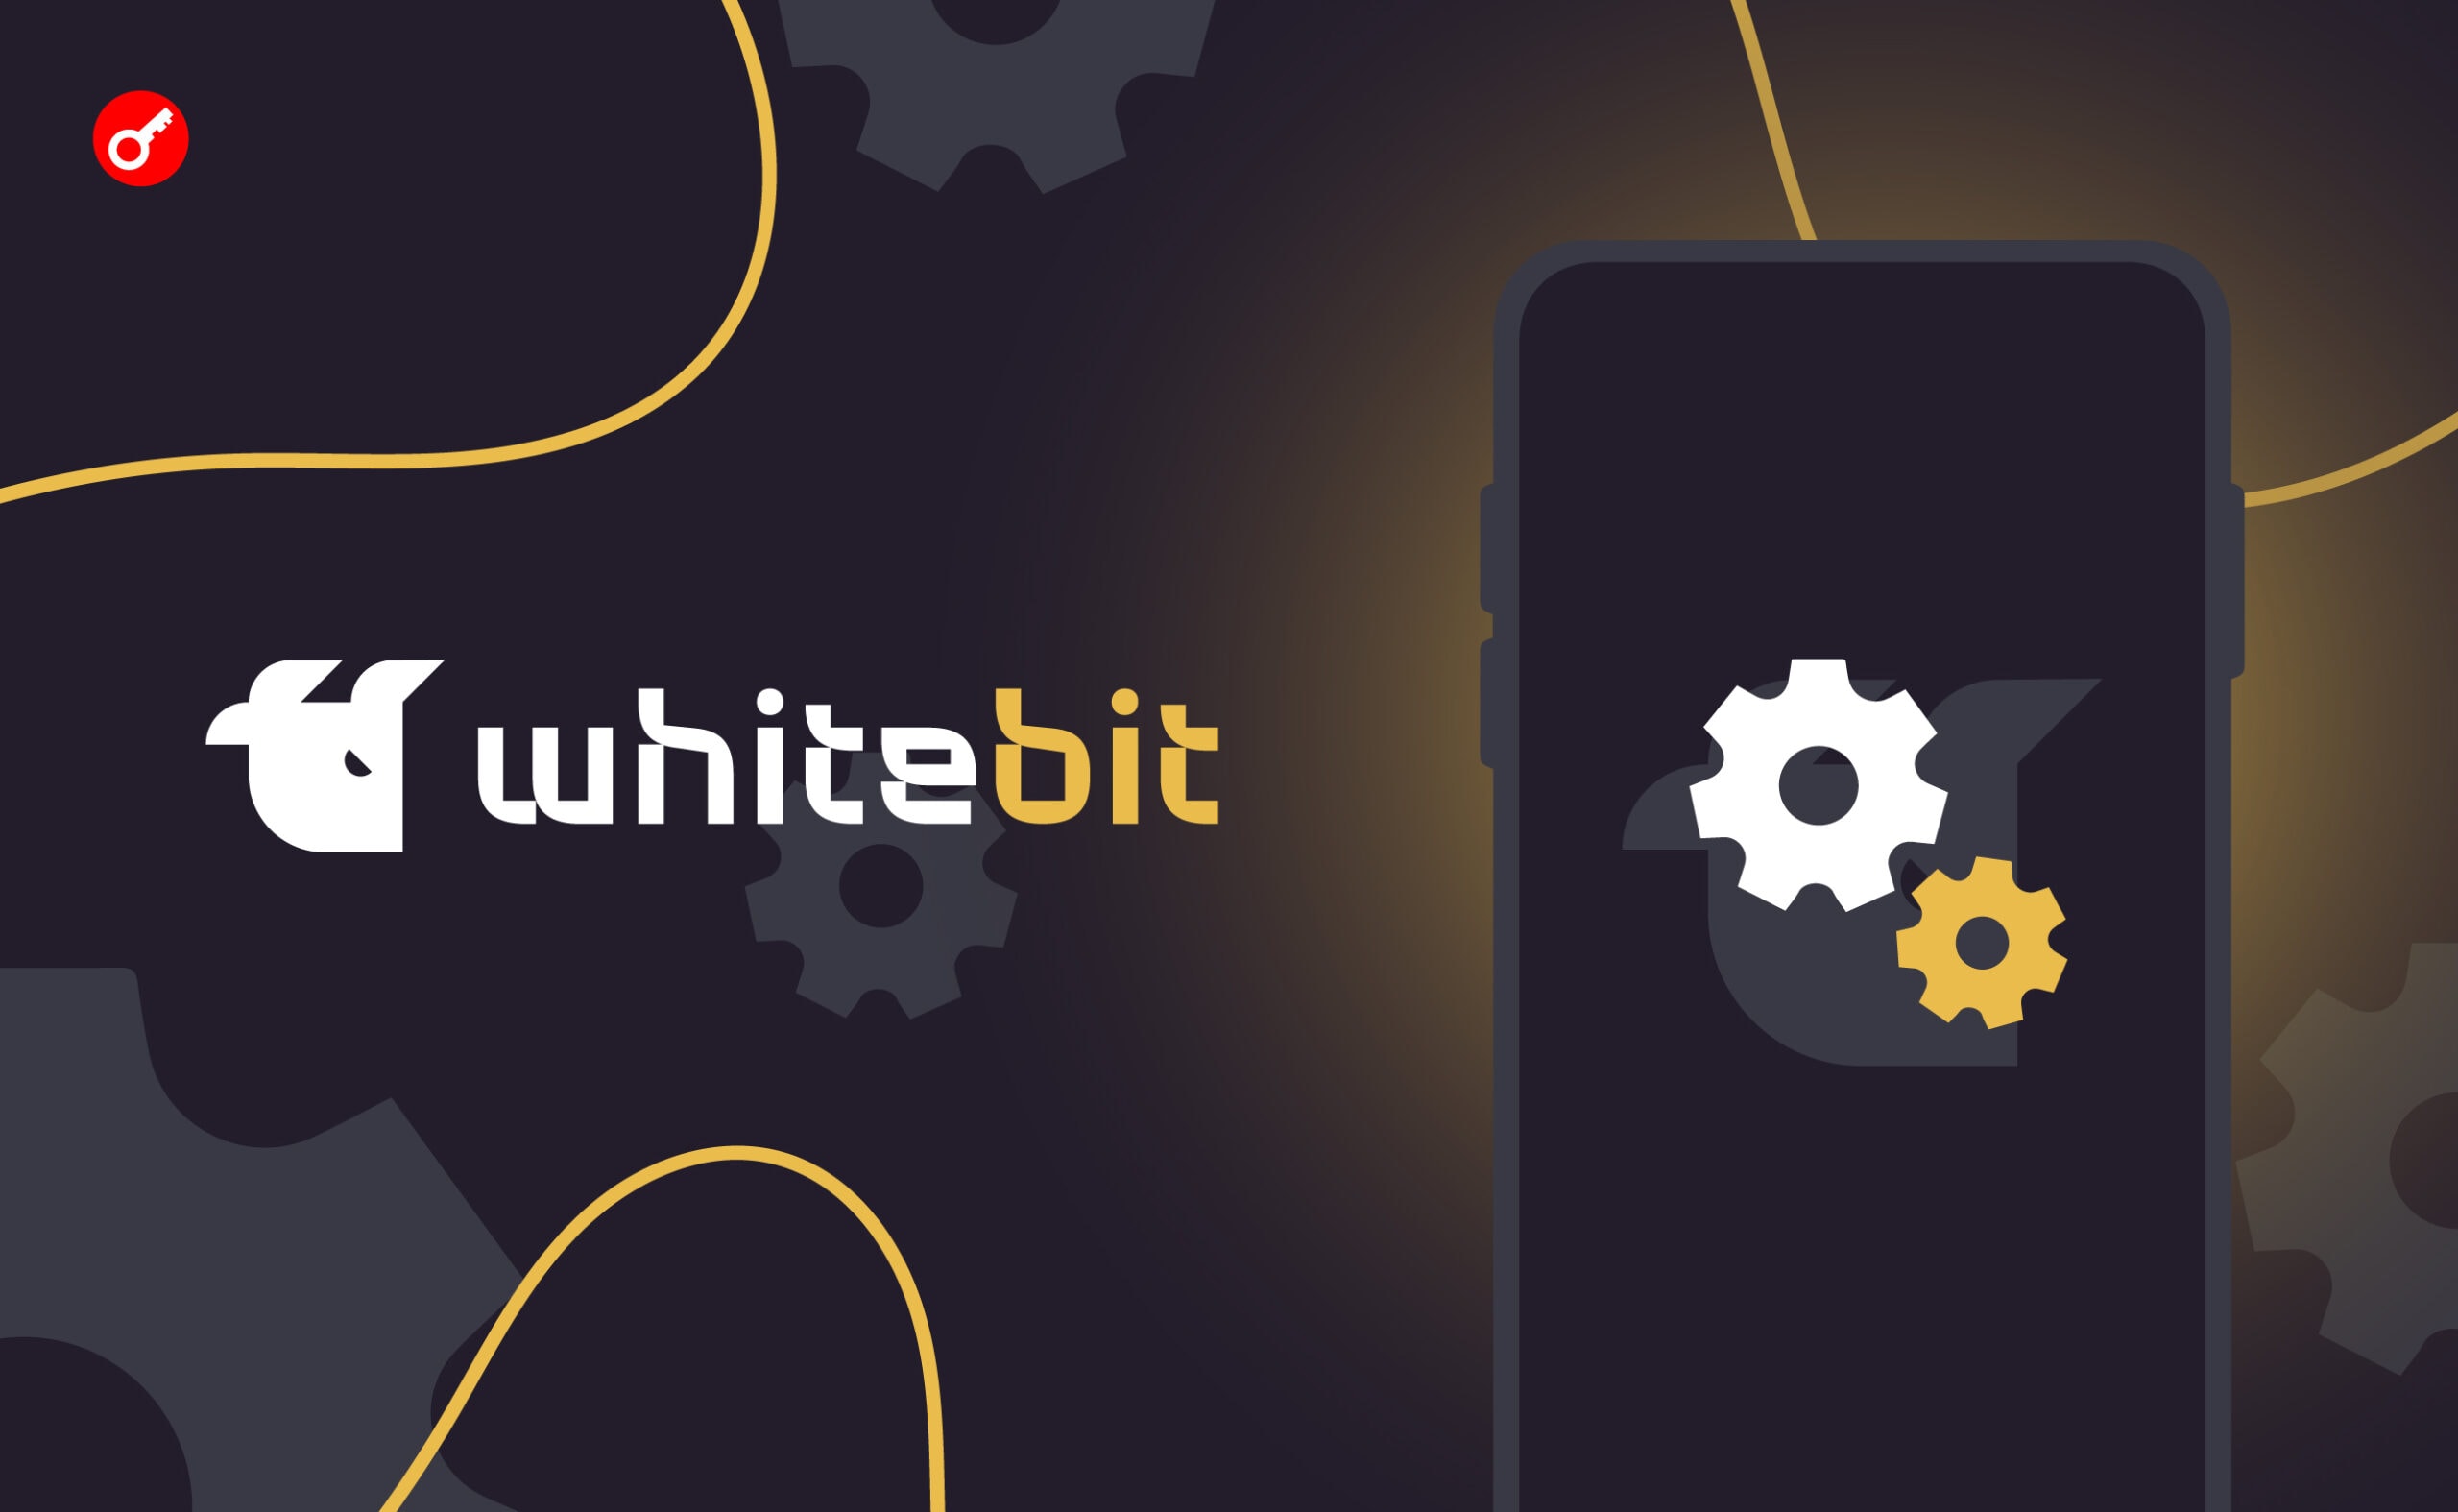 Біржа WhiteBIT оголосила про оновлення додатка. Головний колаж новини.